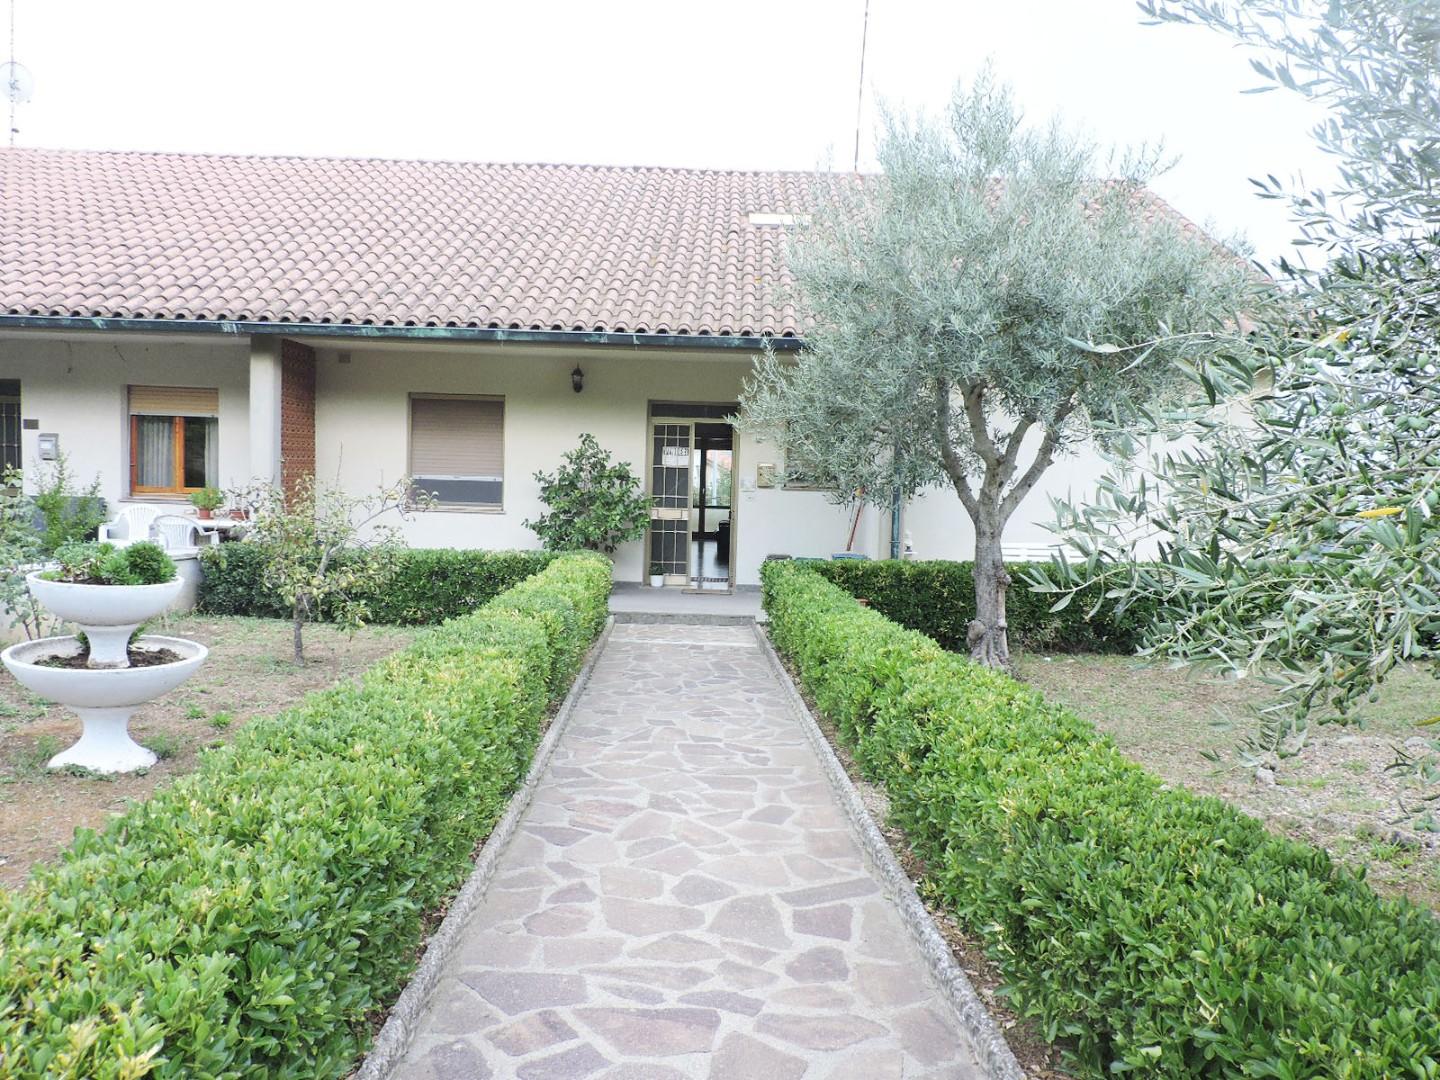 Villa Bifamiliare in vendita a Pomarance, 9 locali, prezzo € 210.000 | CambioCasa.it